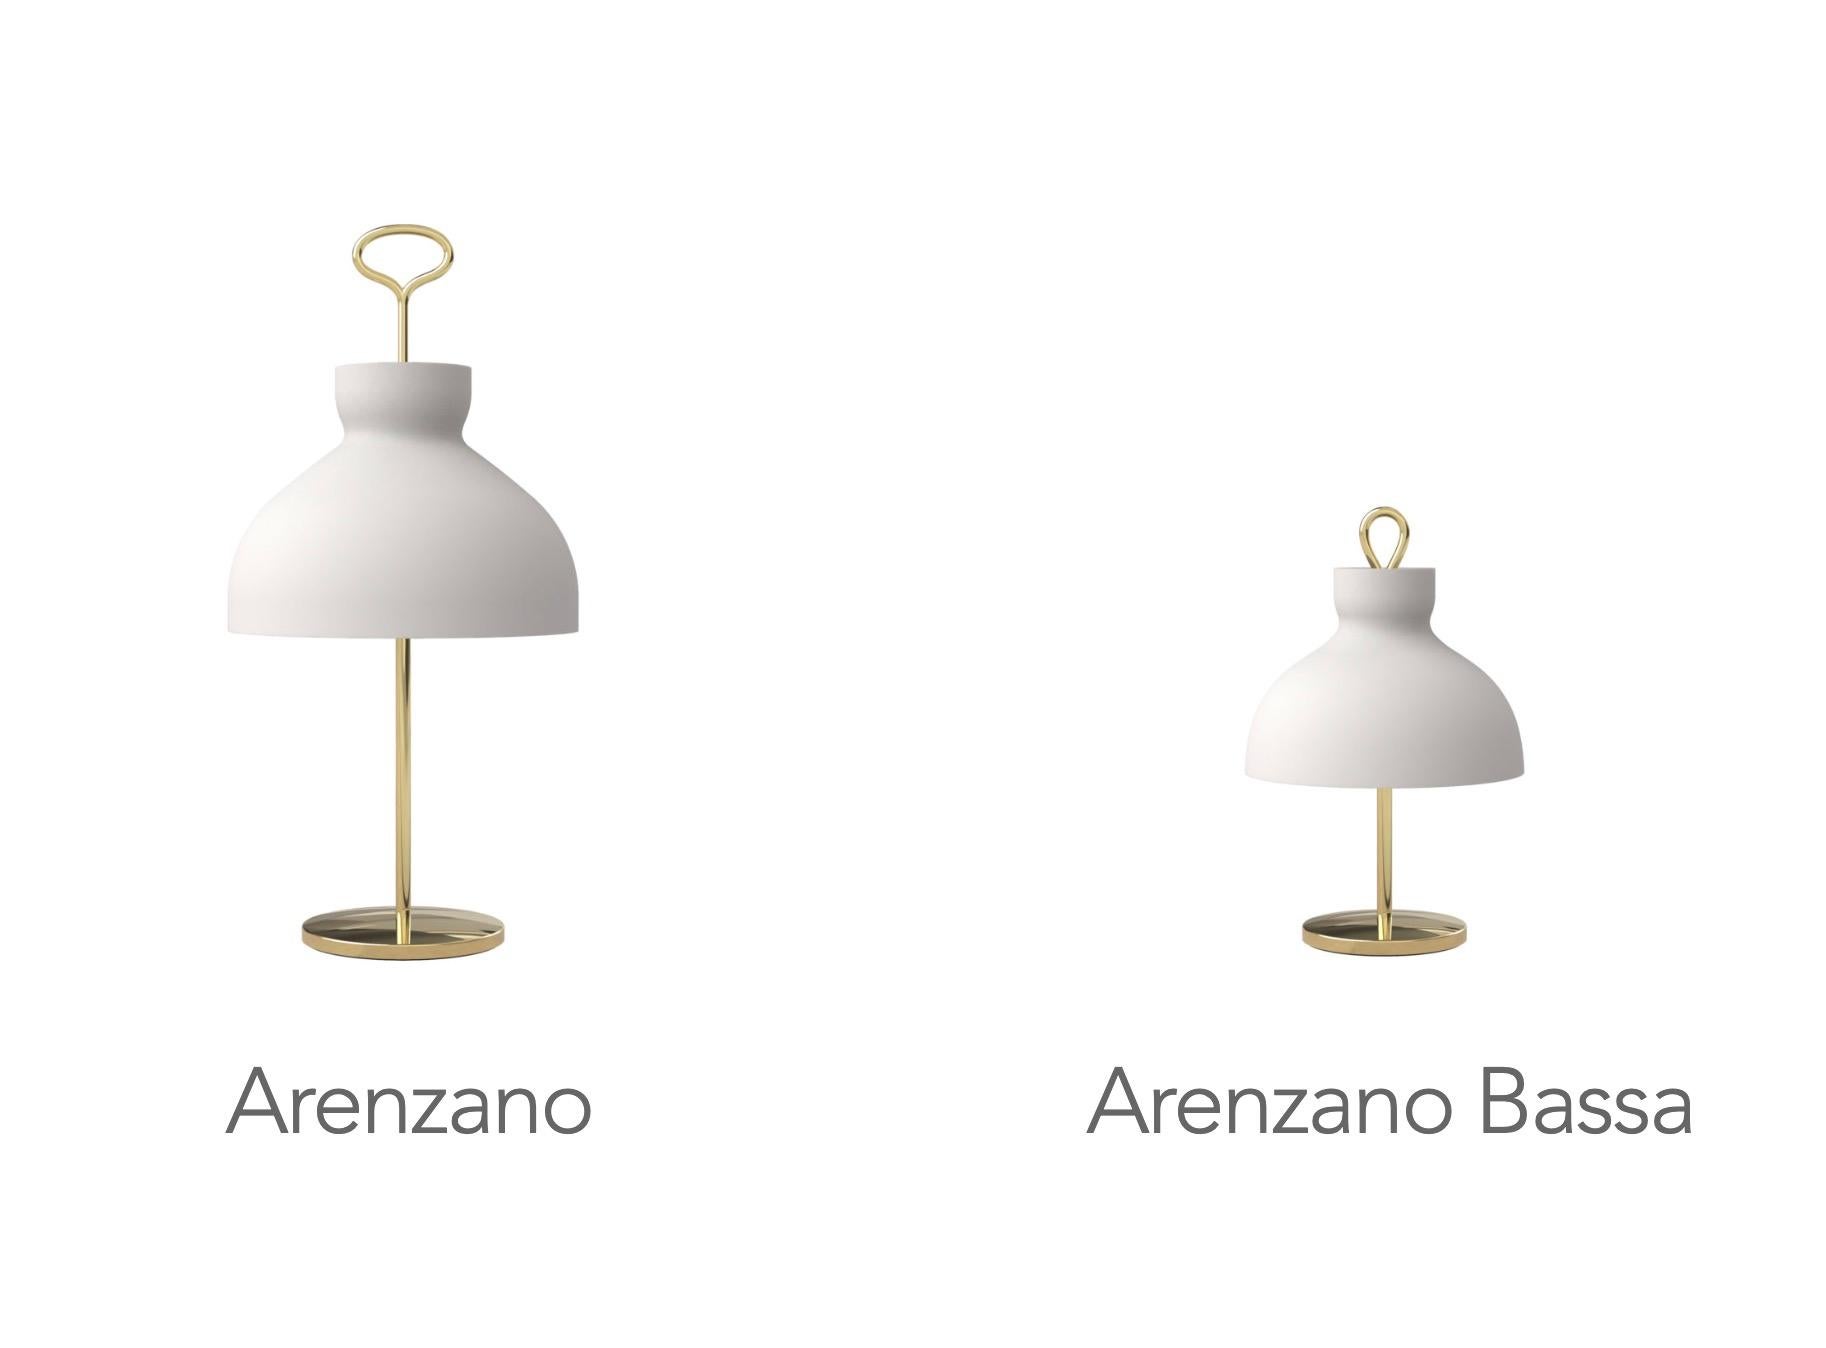 Ignazio Gardella 'Arenzano Bassa' Table Lamp in Chrome and Glass for Tato Italia For Sale 5